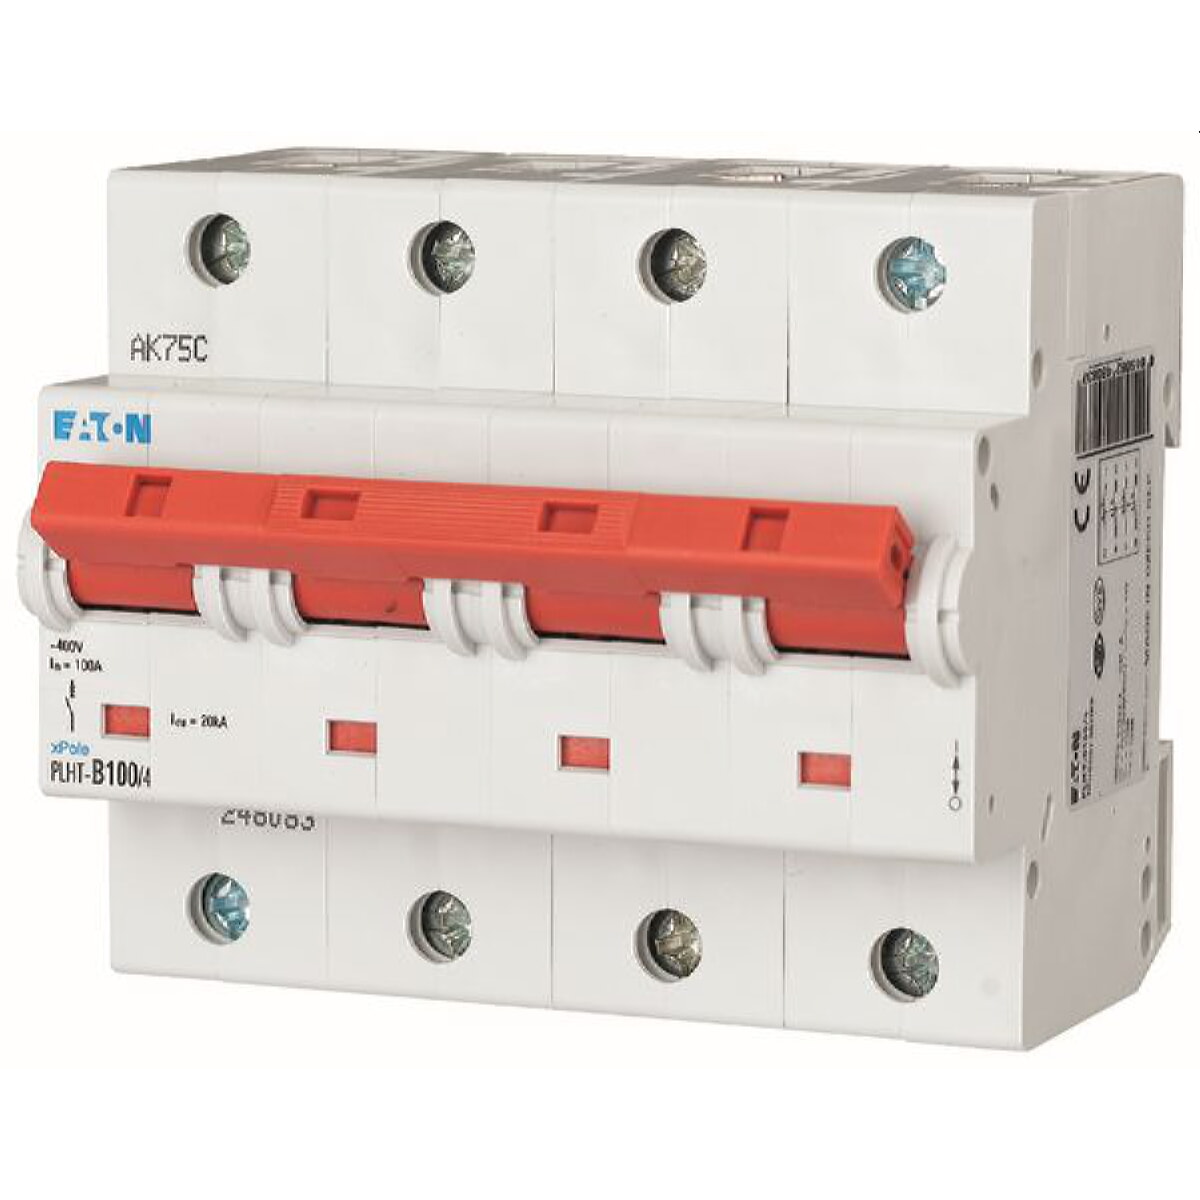 Eaton Electric Leitungsschutzschalter, Automat PLHT-B100/4 B100A 4polig